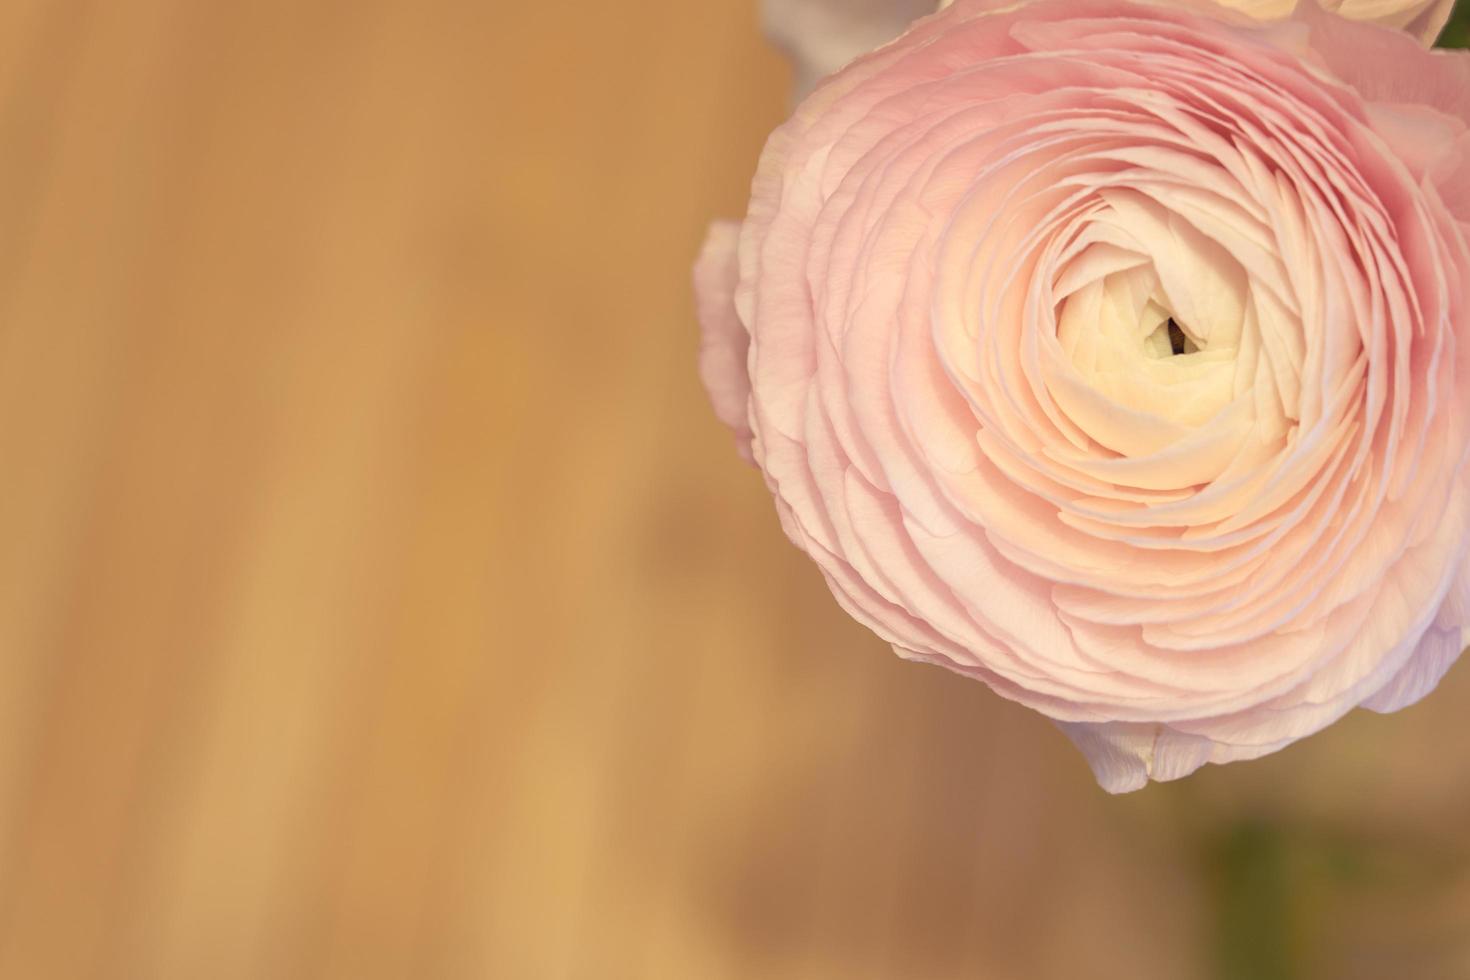 roze ranunculus bloemen close-up met een onscherpe achtergrond foto